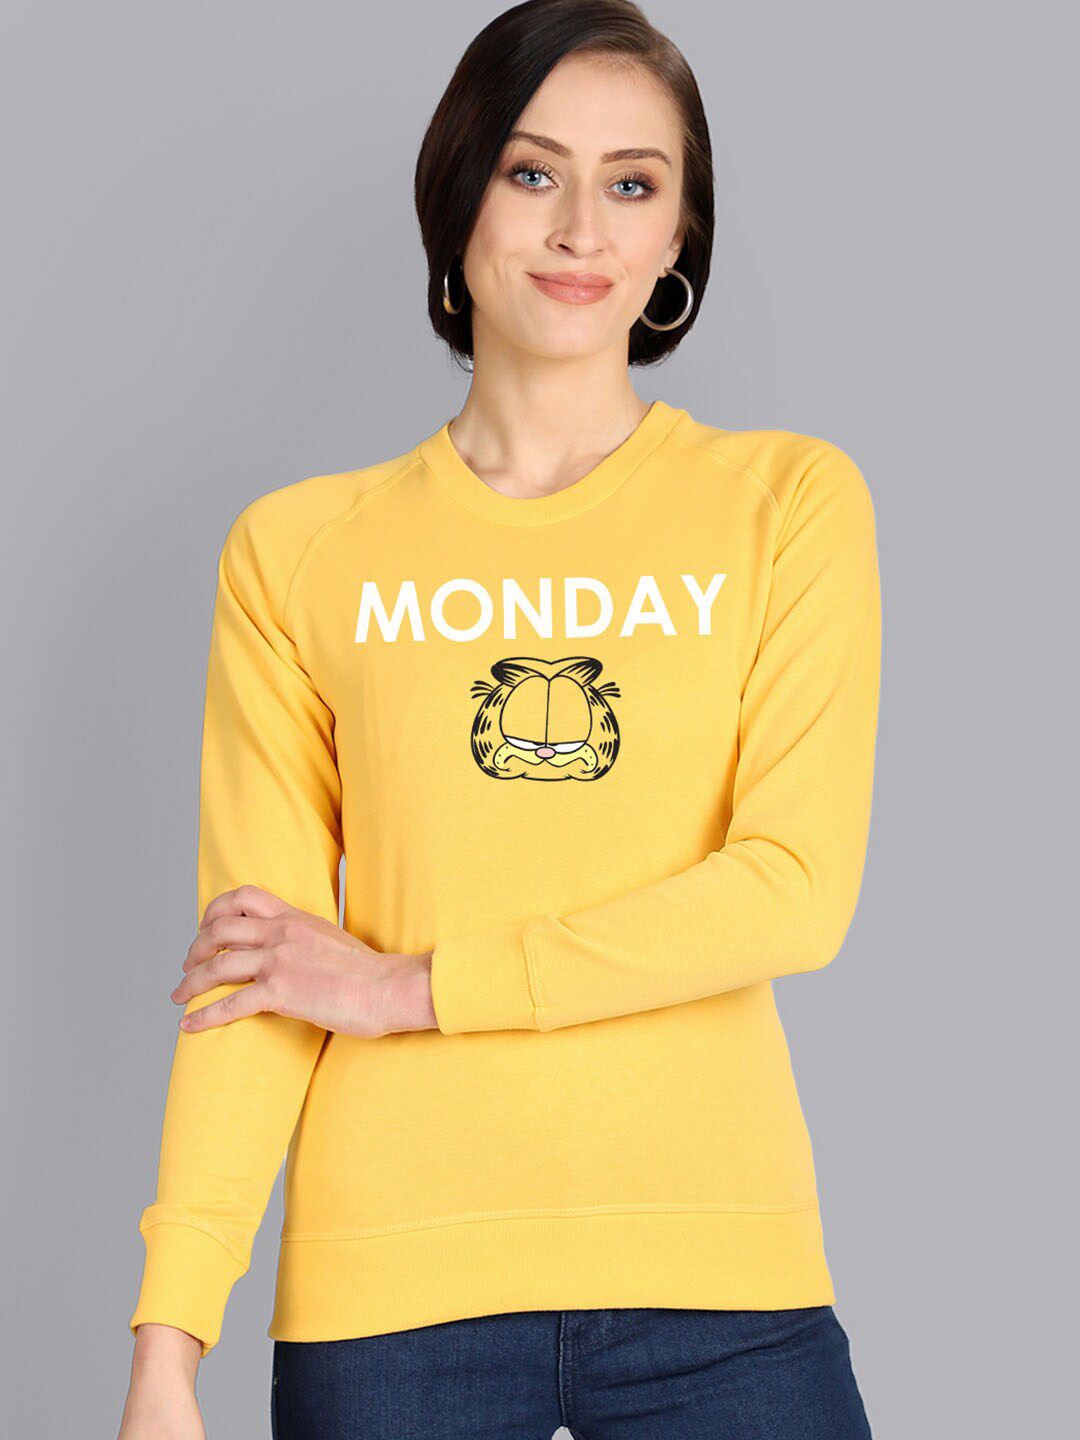 Free Authority Women Yellow Printed Sweatshirt Price in India